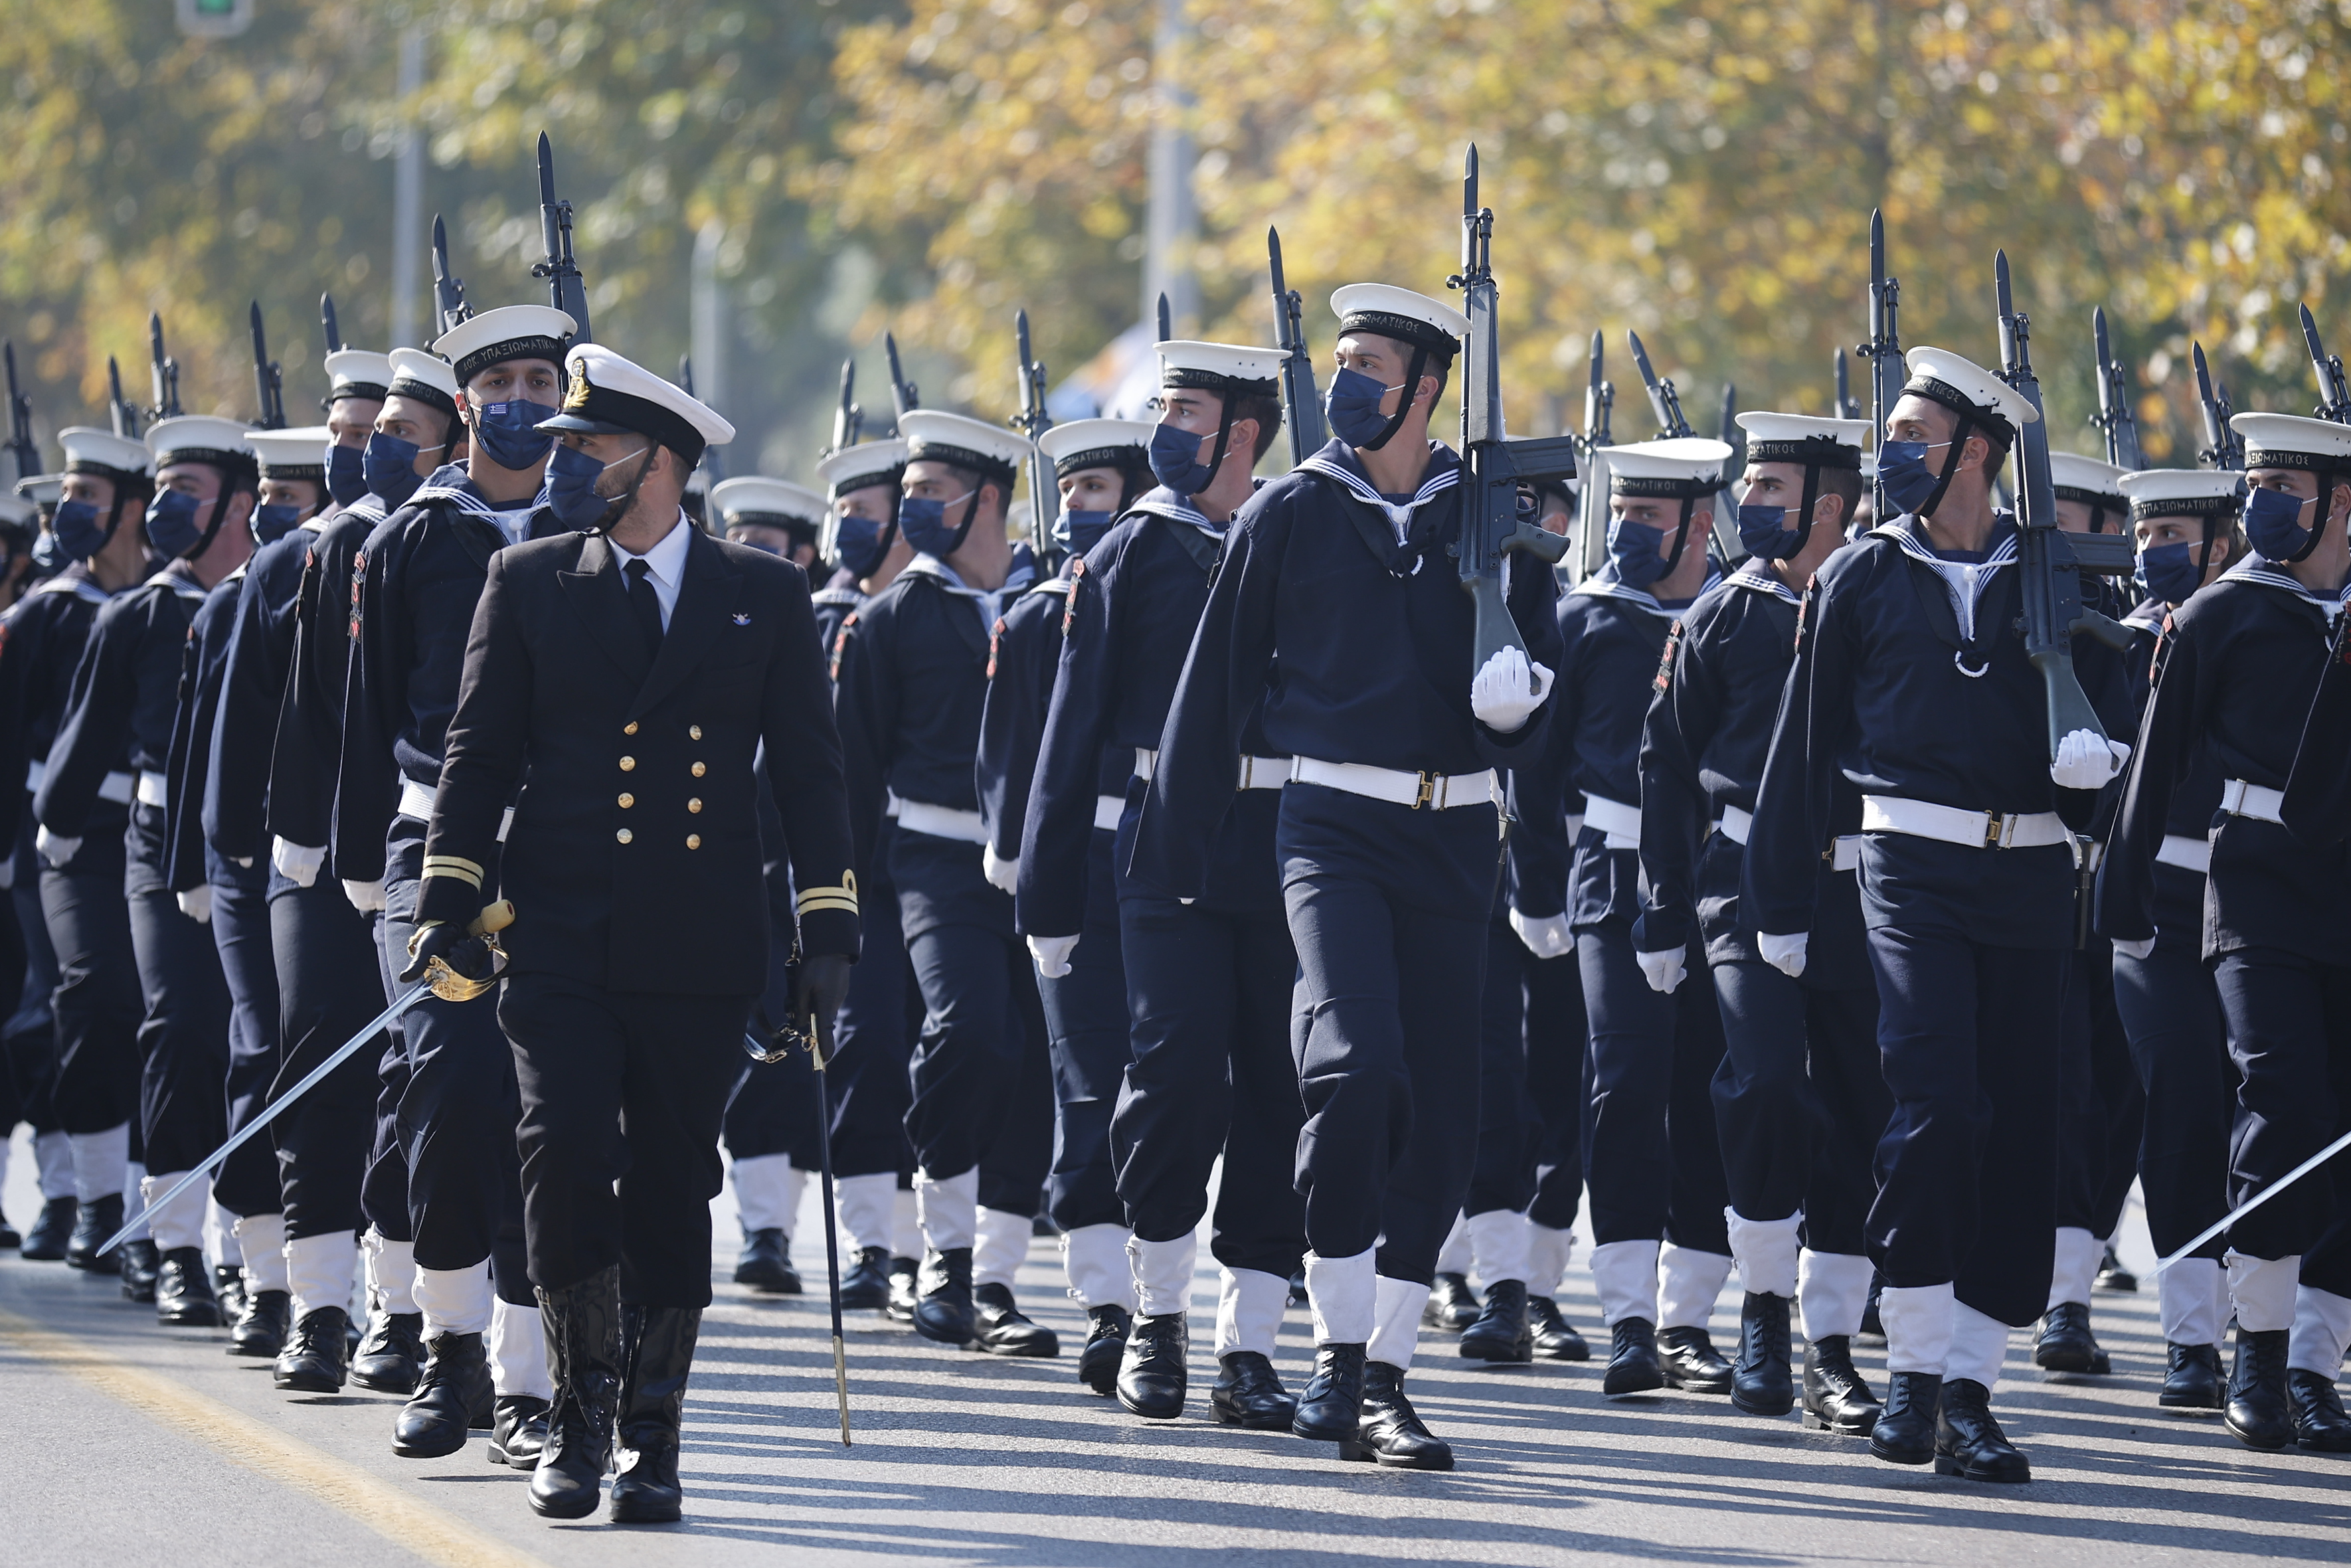 Στρατιωτικά τμήματα παρελαύνουν κατά τη διάρκεια της στρατιωτικής παρέλασης που πραγματοποιείται στο πλαίσιο των εορταστικών εκδηλώσεων για την Εθνική Επέτειο της 28ης Οκτωβρίου 1940, στη Θεσσαλονίκη, την Πέμπτη 28 Οκτωβρίου 2021. Στρατιωτική παρέλαση, ενώπιον της Προέδρου της Δημοκρατίας Κατερίνας Σακελλαροπούλου, πραγματοποιείται στην παραλιακή Λεωφόρο Μεγάλου Αλεξάνδρου της Θεσσαλονίκης, για την εθνική επέτειο του «ΟΧΙ». ΑΠΕ-ΜΠΕ/ΑΠΕ-ΜΠΕ/ ΔΗΜΗΤΡΗΣ ΤΟΣΙΔΗΣ